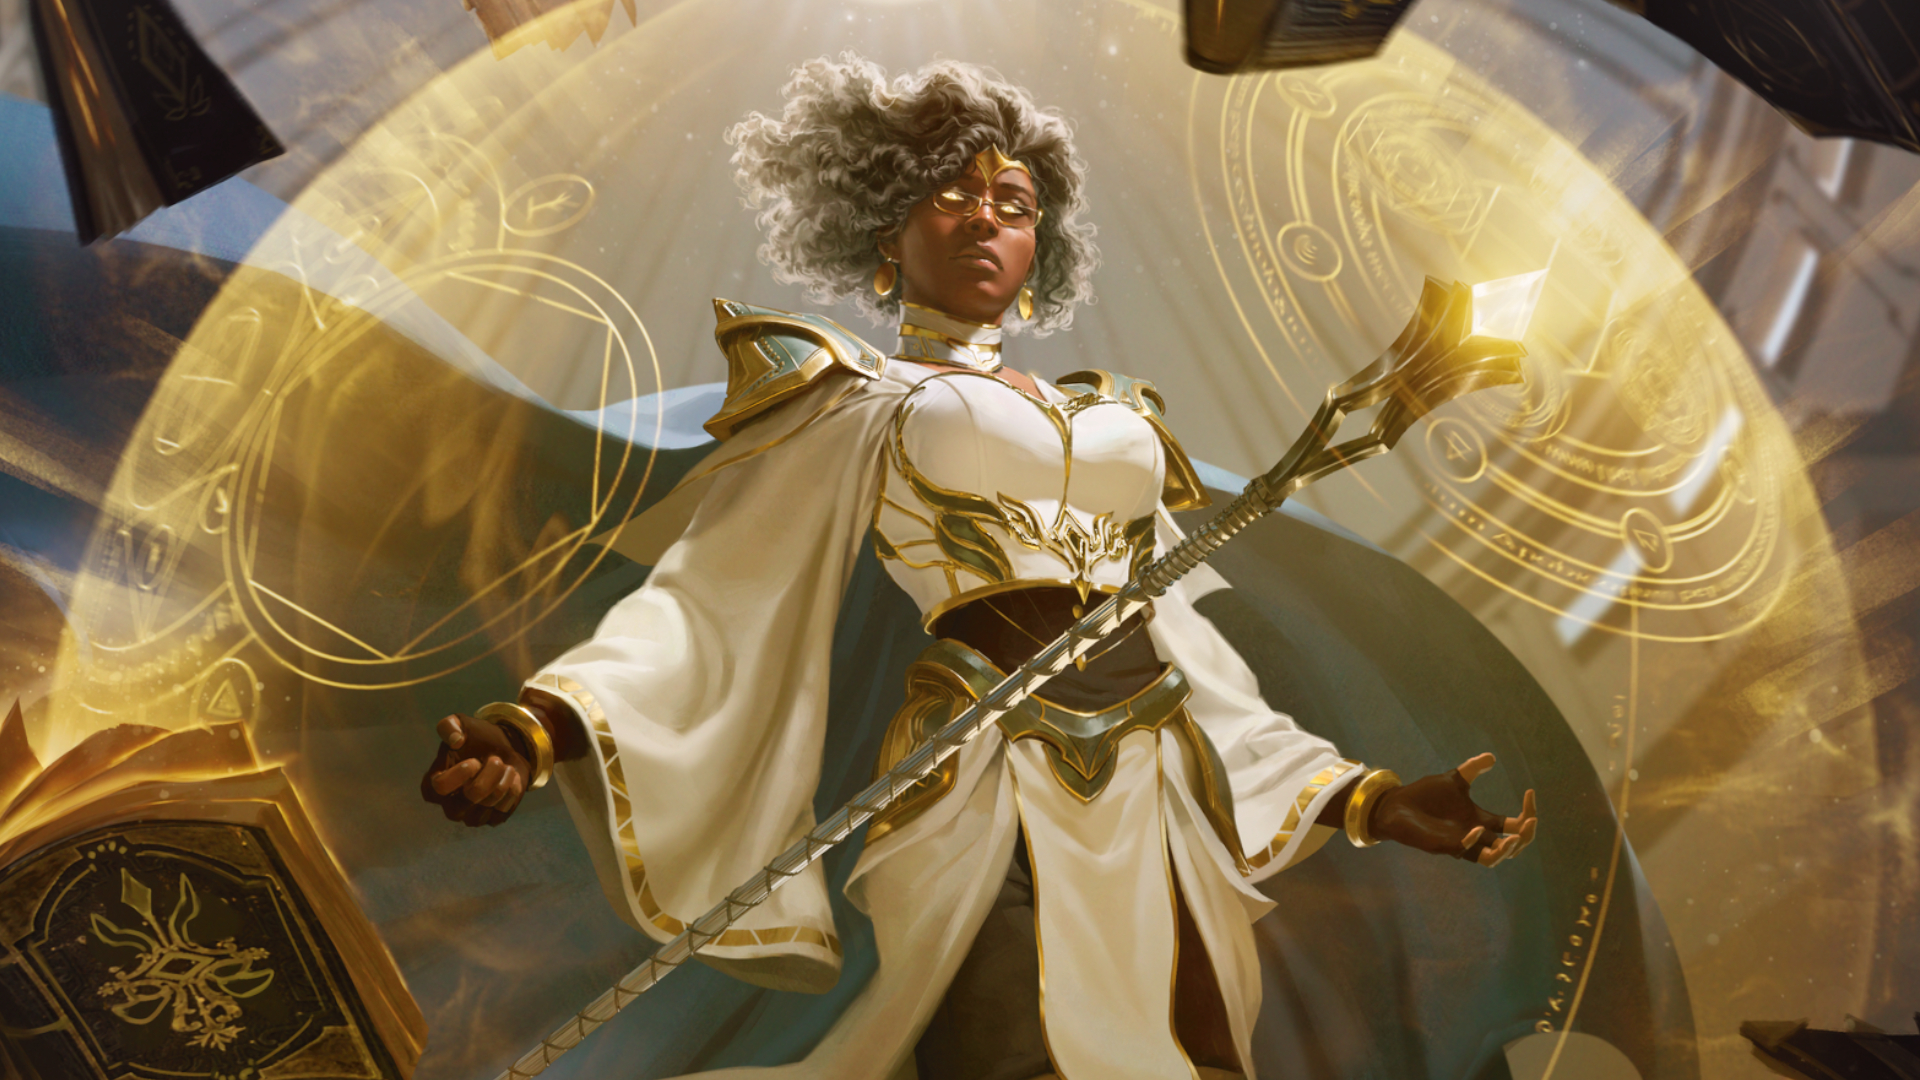 Arte de Dungeons &amp; Dragons con una mujer de ojos brillantes levitando detrás de un escudo mágico.